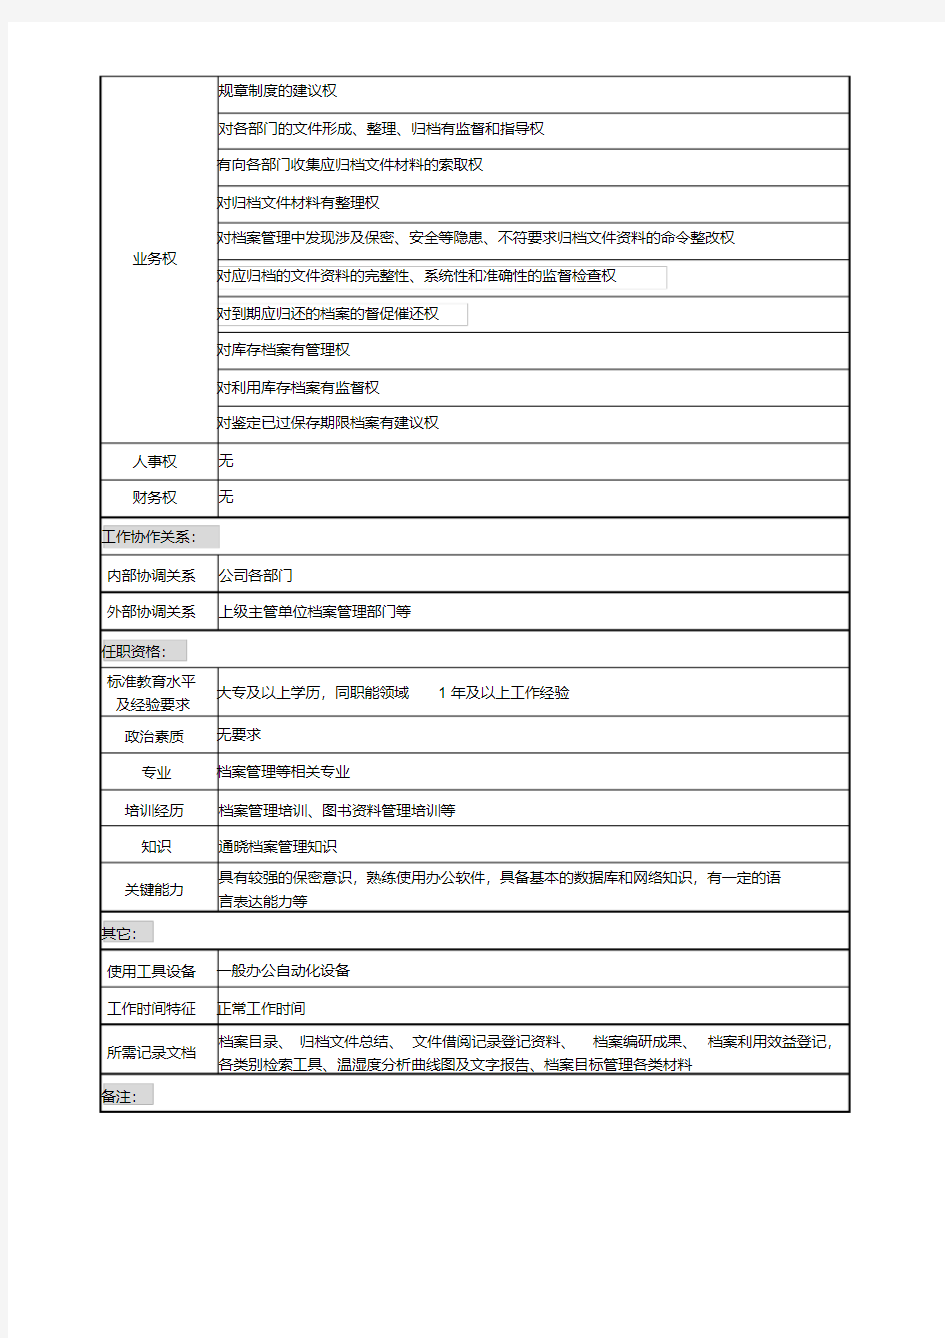 档案管理岗位说明书.pdf